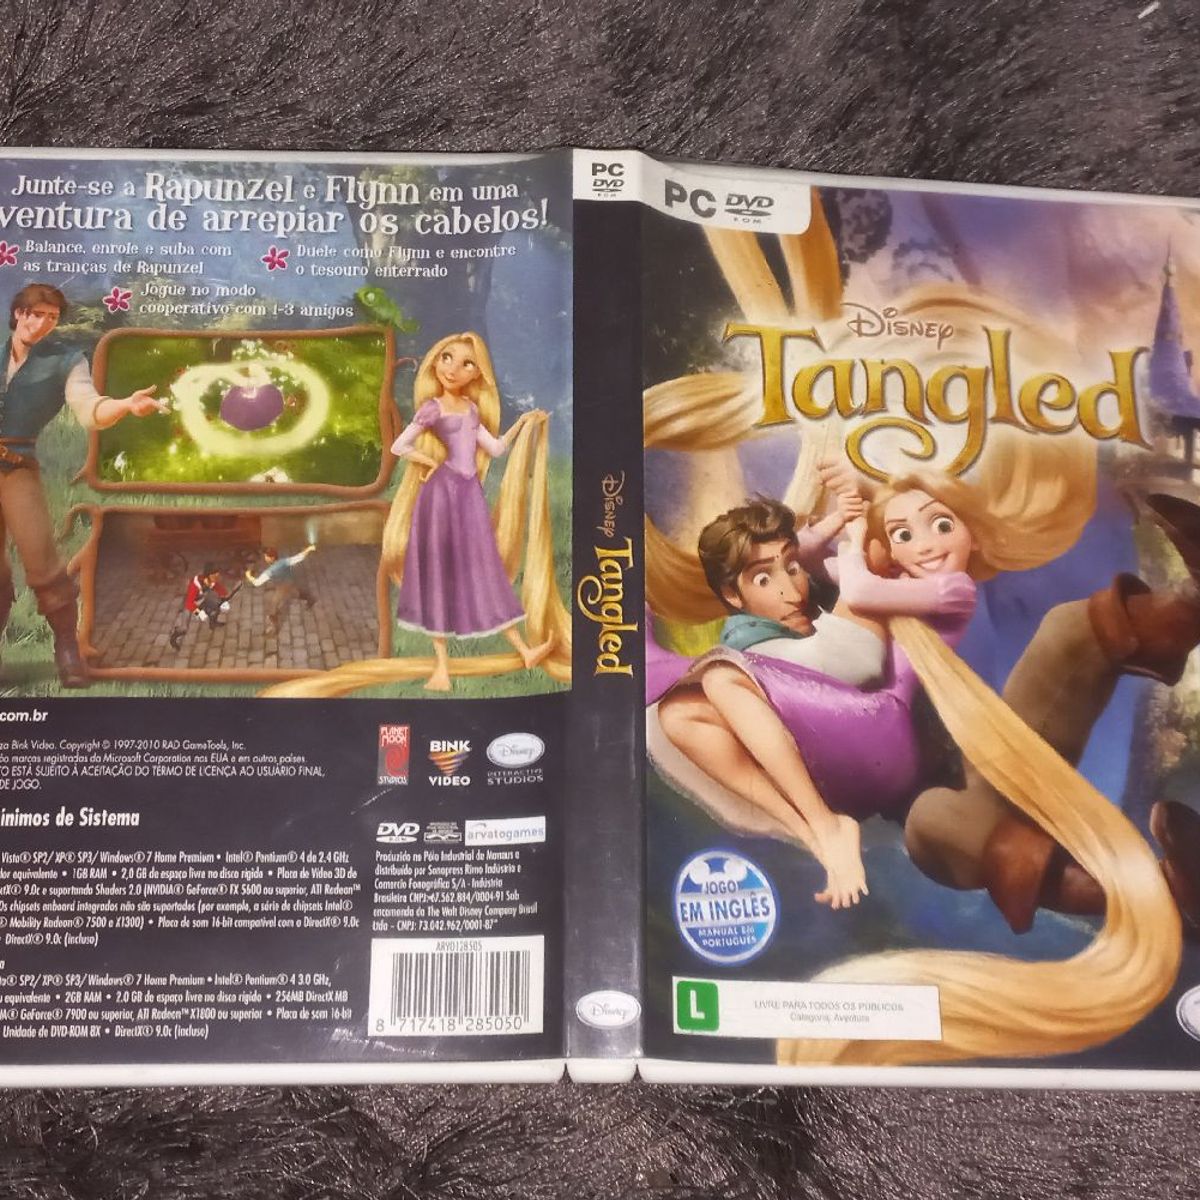 Enrolados: Jogo Game Princesa Rapunzel e Flynn Rider - Enrolados (Tangled )  Confusão em Dobro 